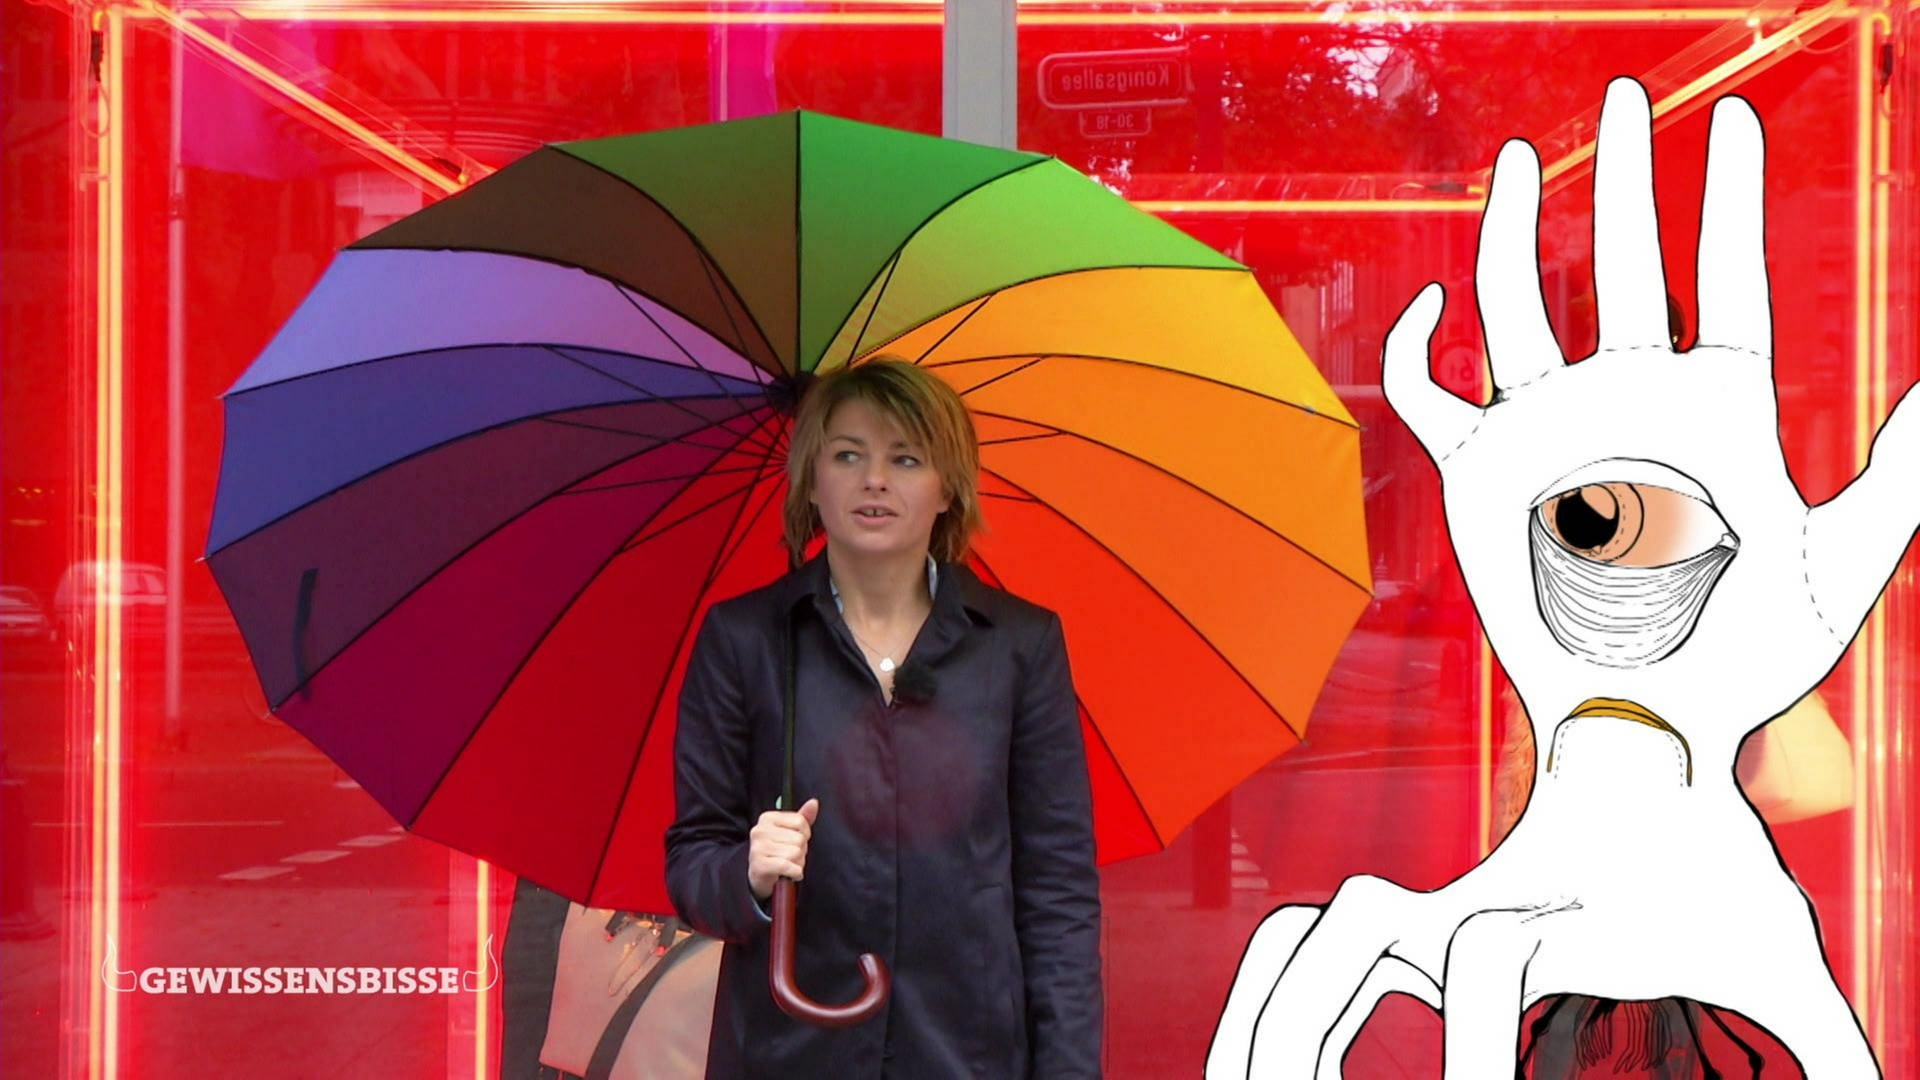 Die Moderatorin steht mit einem Regenschirm in Regenbogenfarben vor einem roten Schaufenster, neben ihr eine Zeichnung der Habgier als Hand.